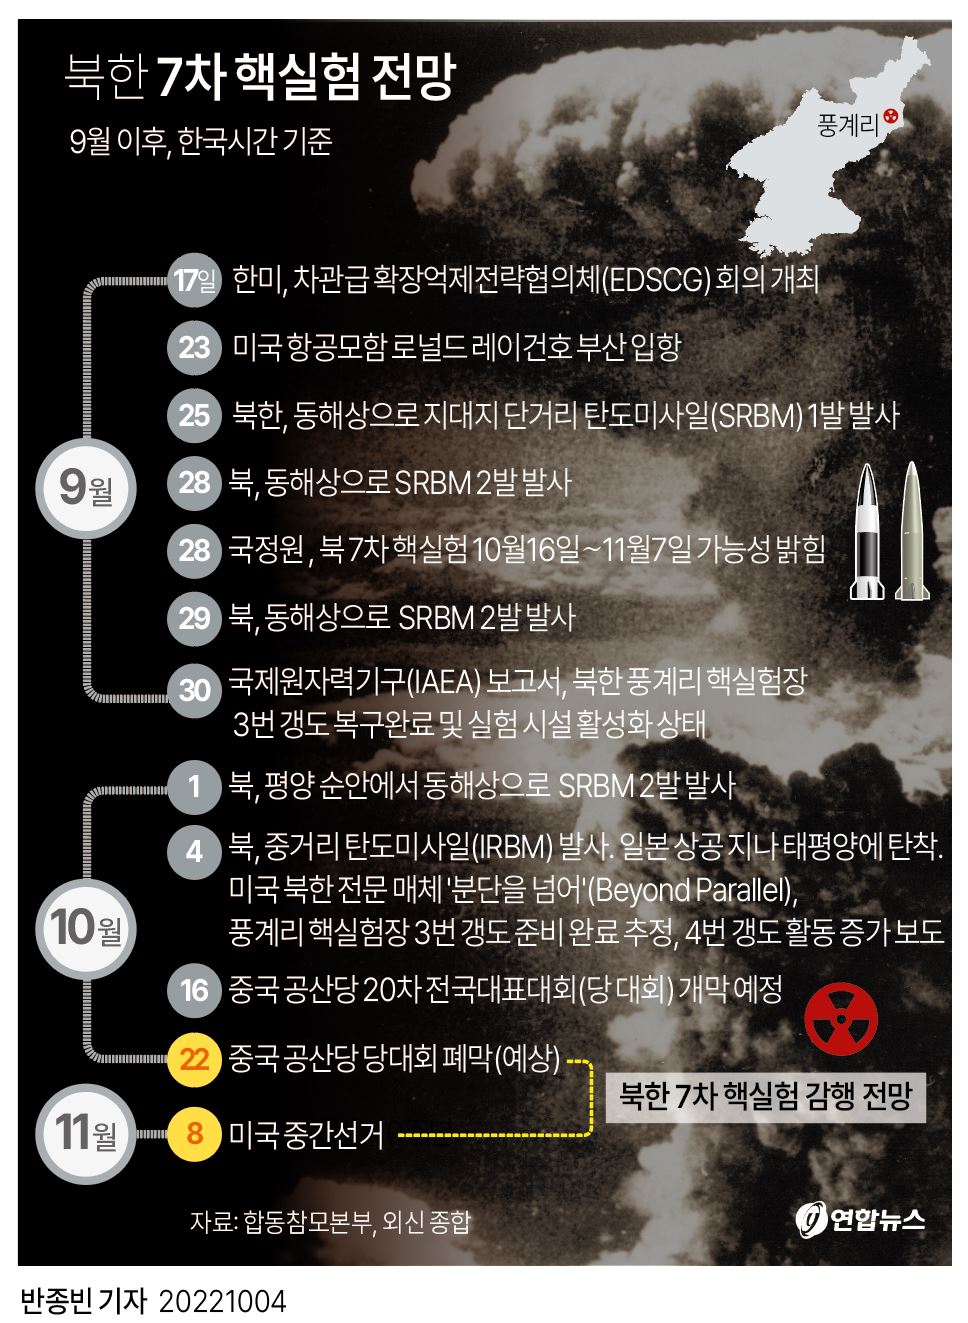 [그래픽] 북한 7차 핵실험 전망